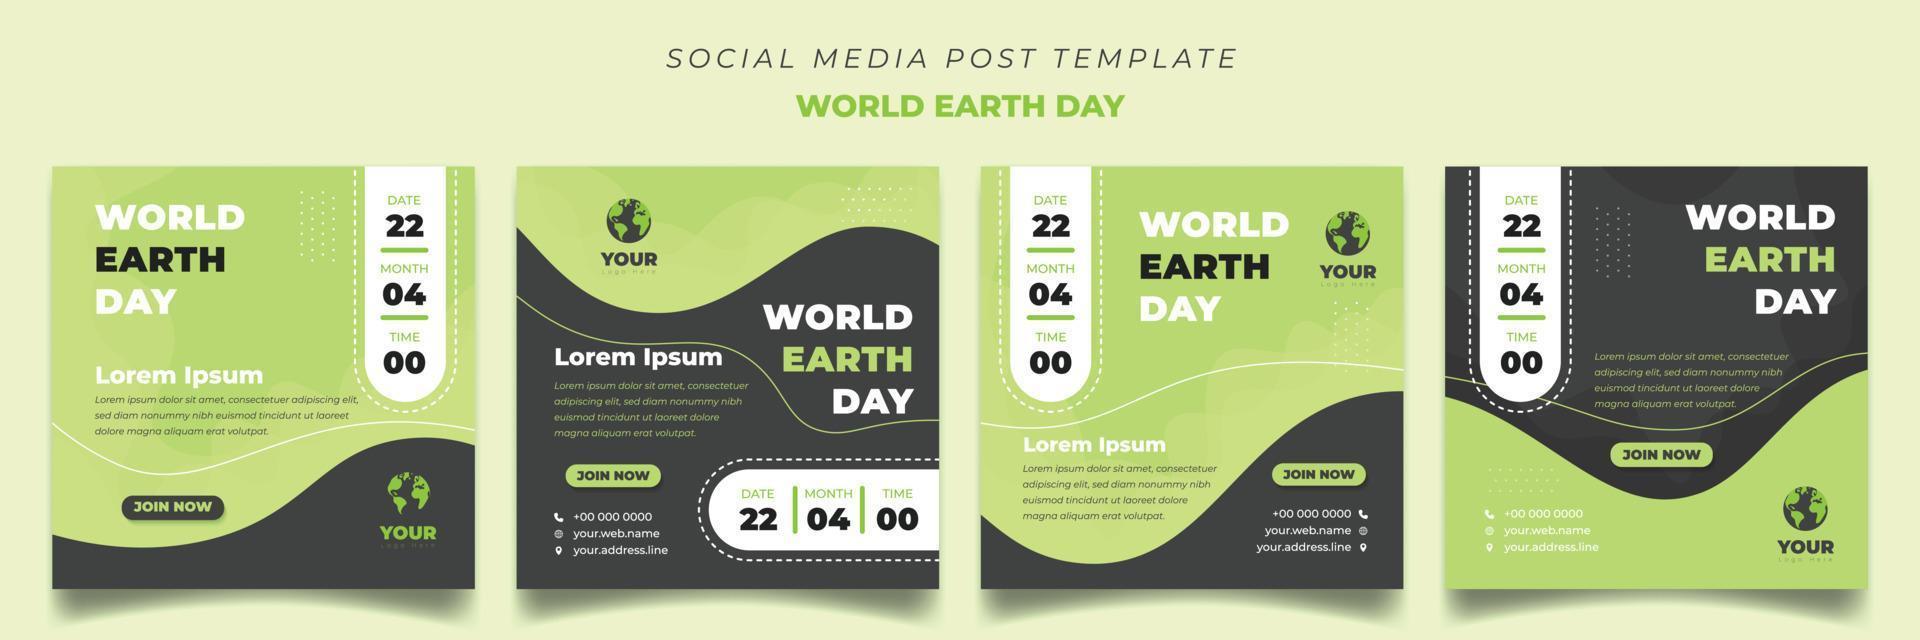 satz von social-media-beitragsvorlagendesign im quadratischen hintergrund. Welttag der Erde Vorlage mit grünem Hintergrund. vektor